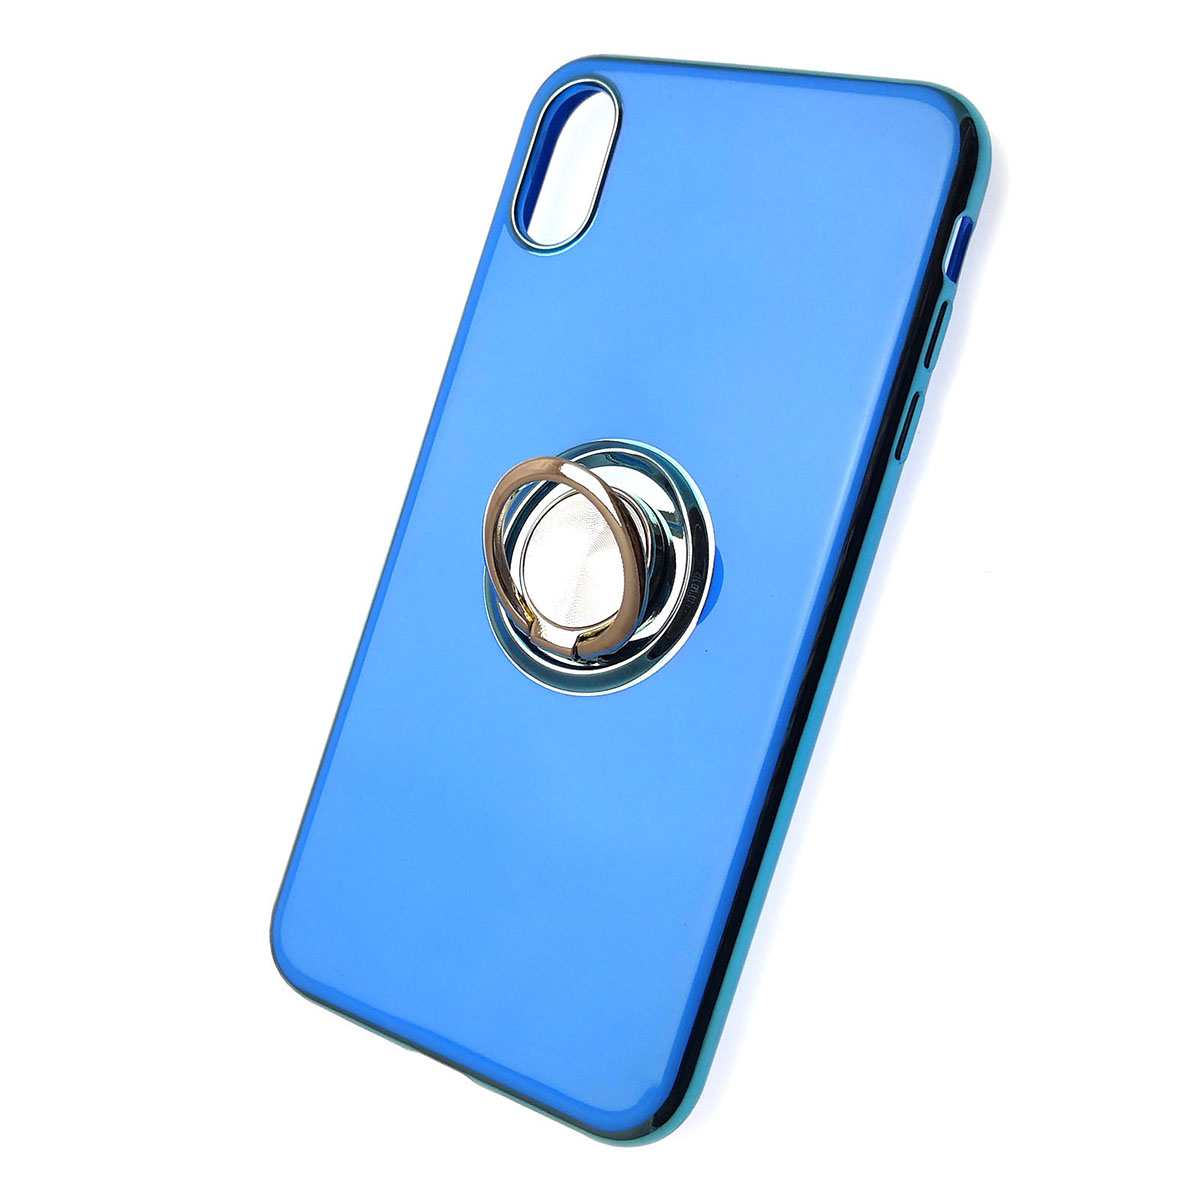 Чехол накладка для APPLE iPhone XS MAX, силикон, лого, кольцо держатель, цвет синий.